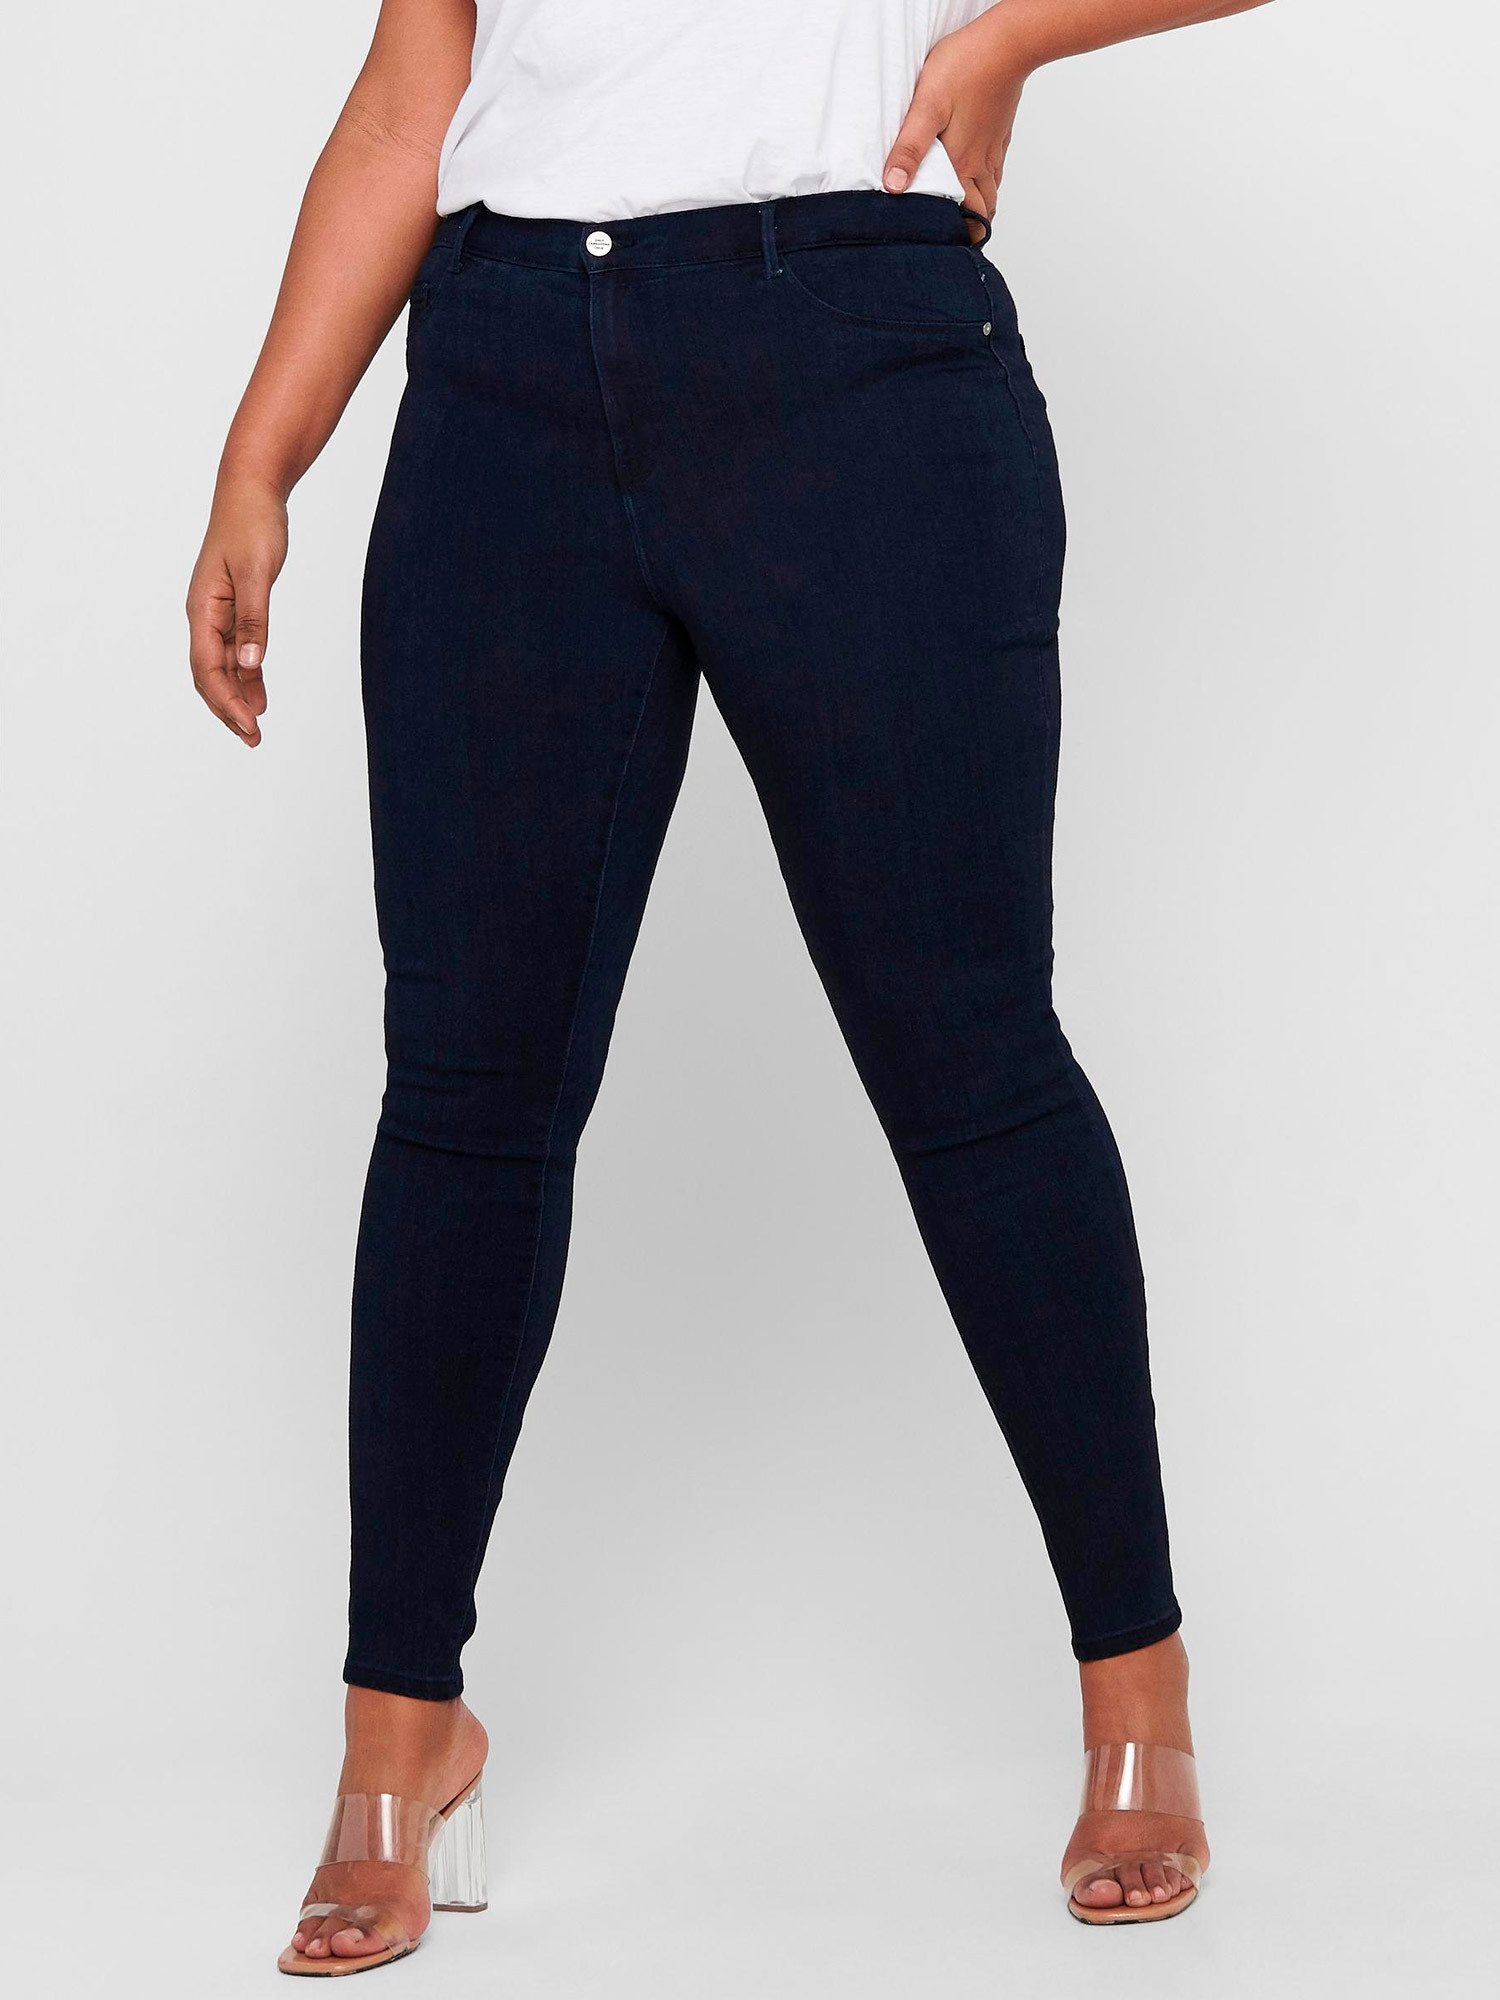 Car ANNA - Mørkeblå super stretch jeans med 3 knapper og smale ben